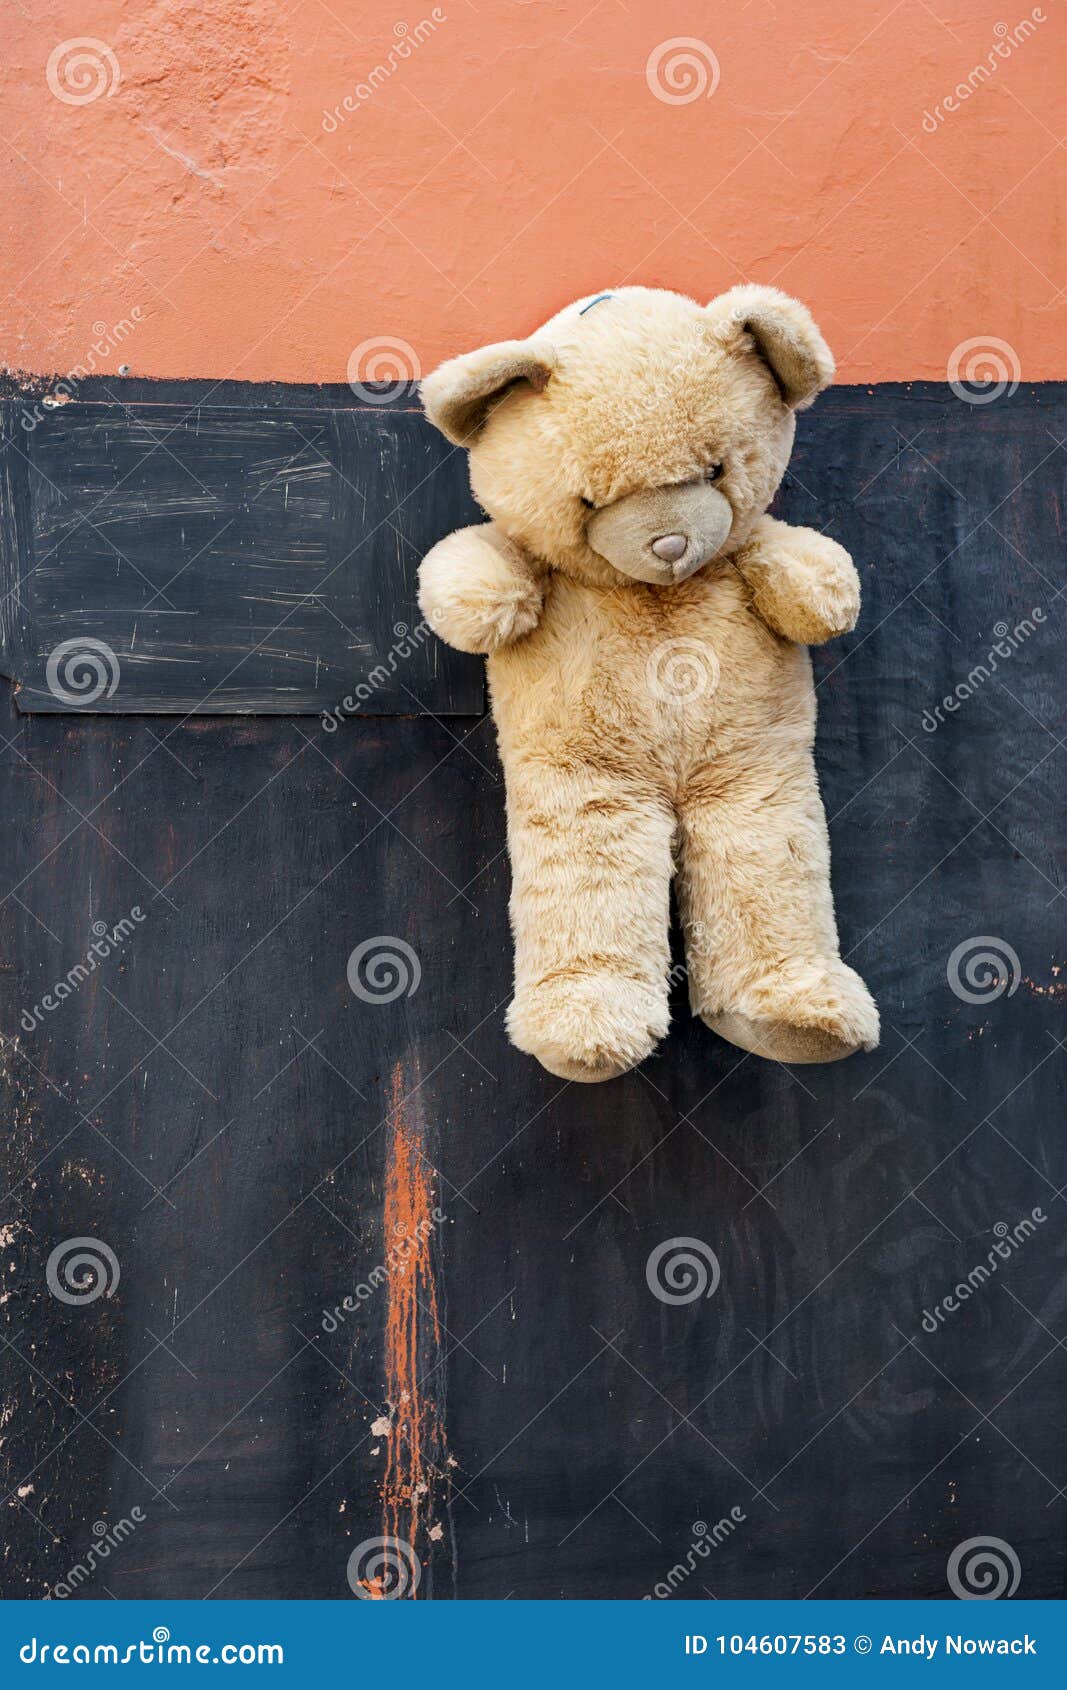 wall e teddy bear